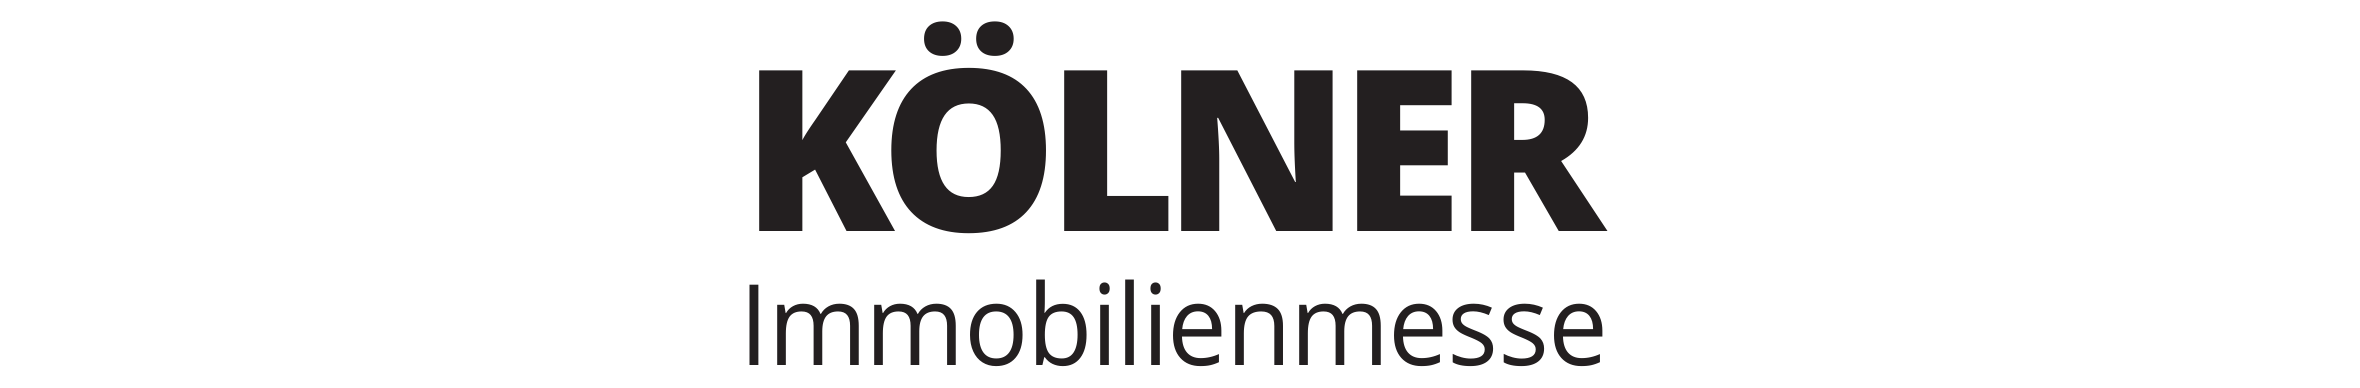 Expertinnen und Experten der S Immobilienpartner GmbH und der Sparkasse KölnBonn informierten